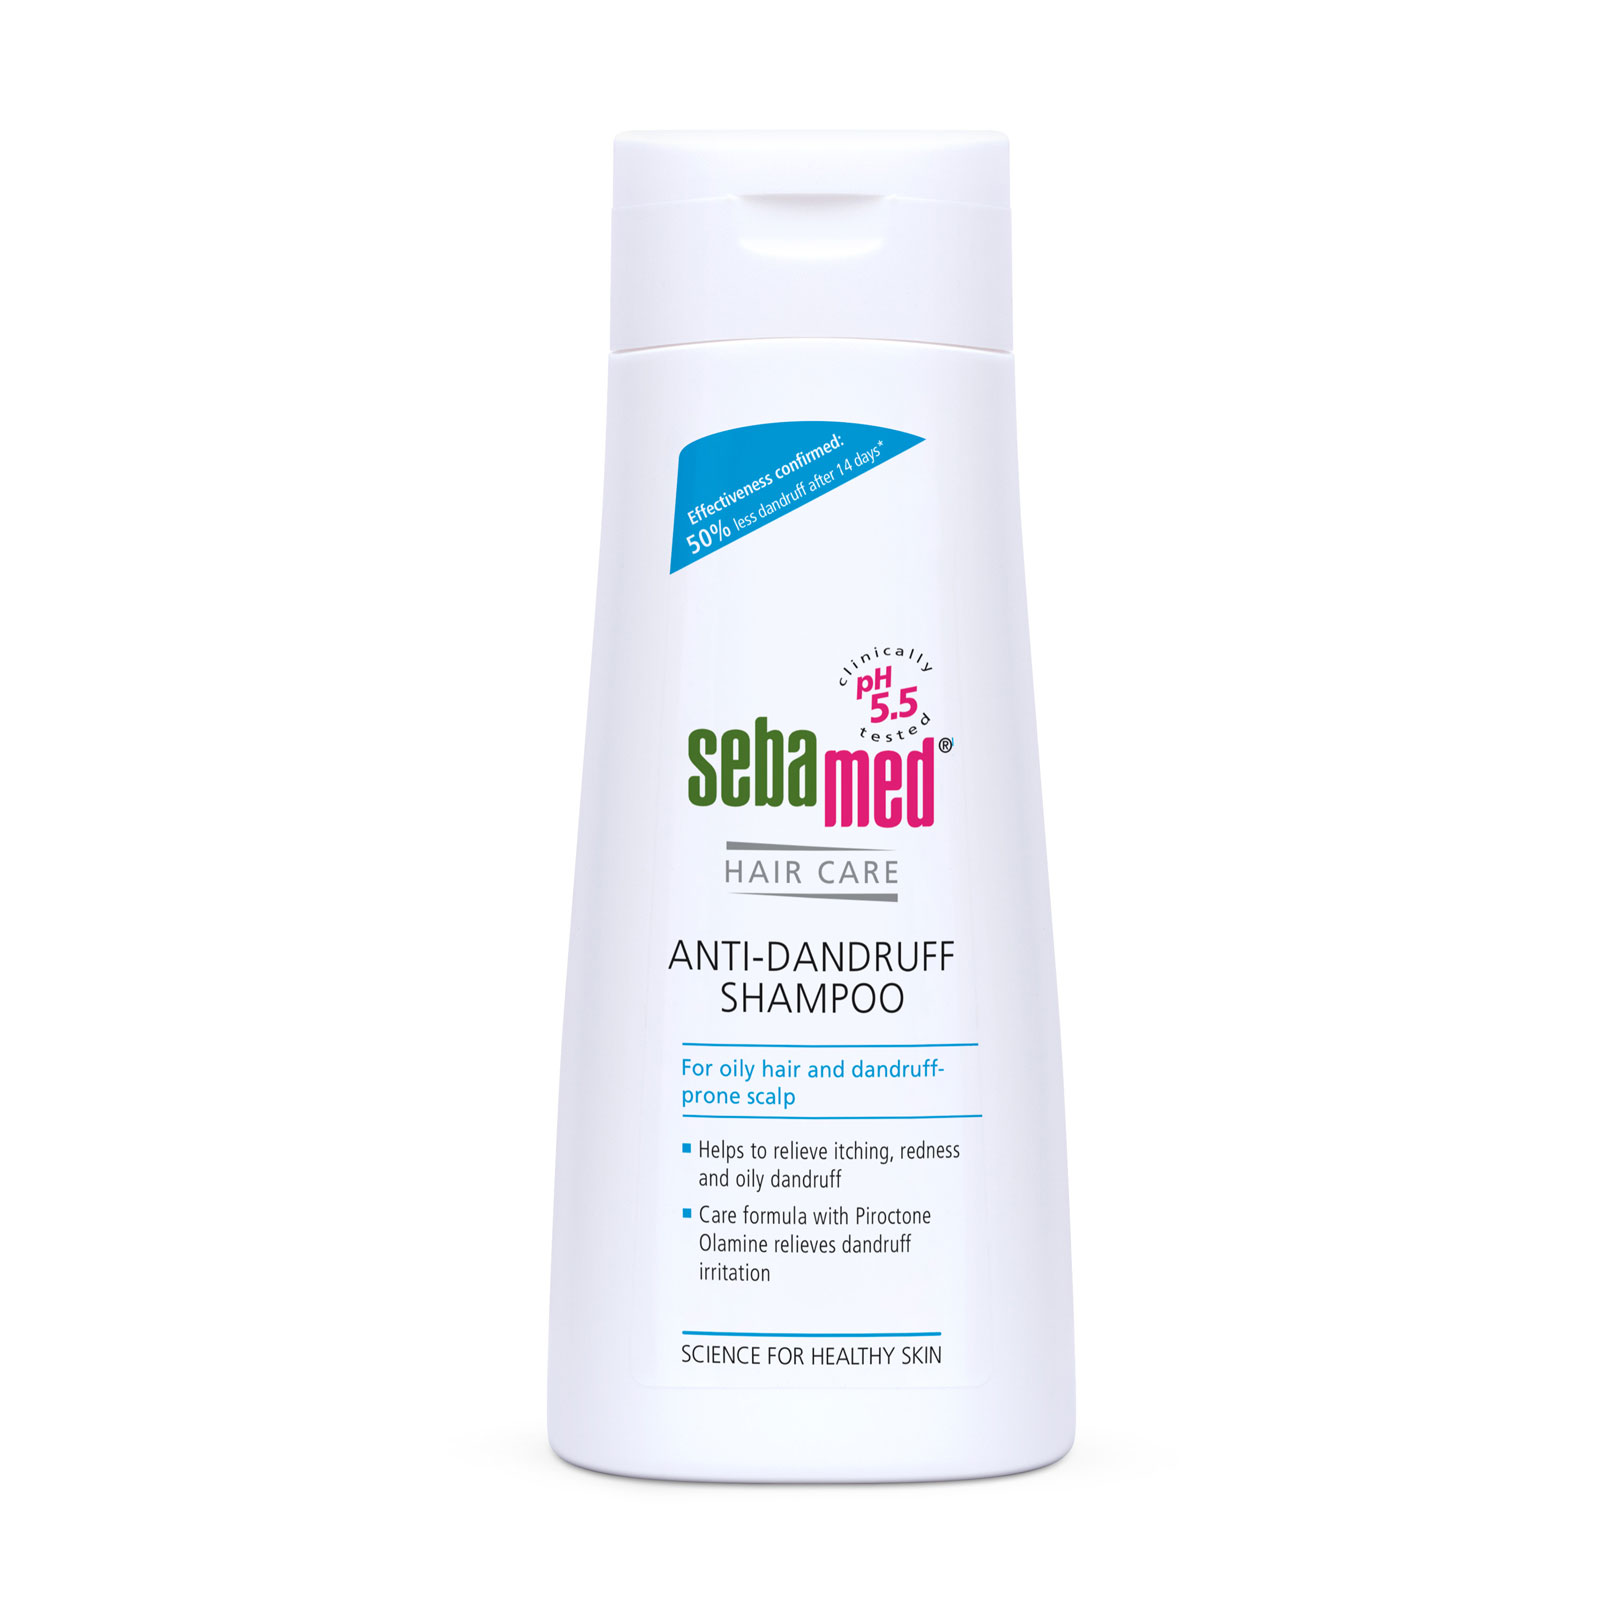 Sebamed Anti-Dandruff Shampoo 200Ml